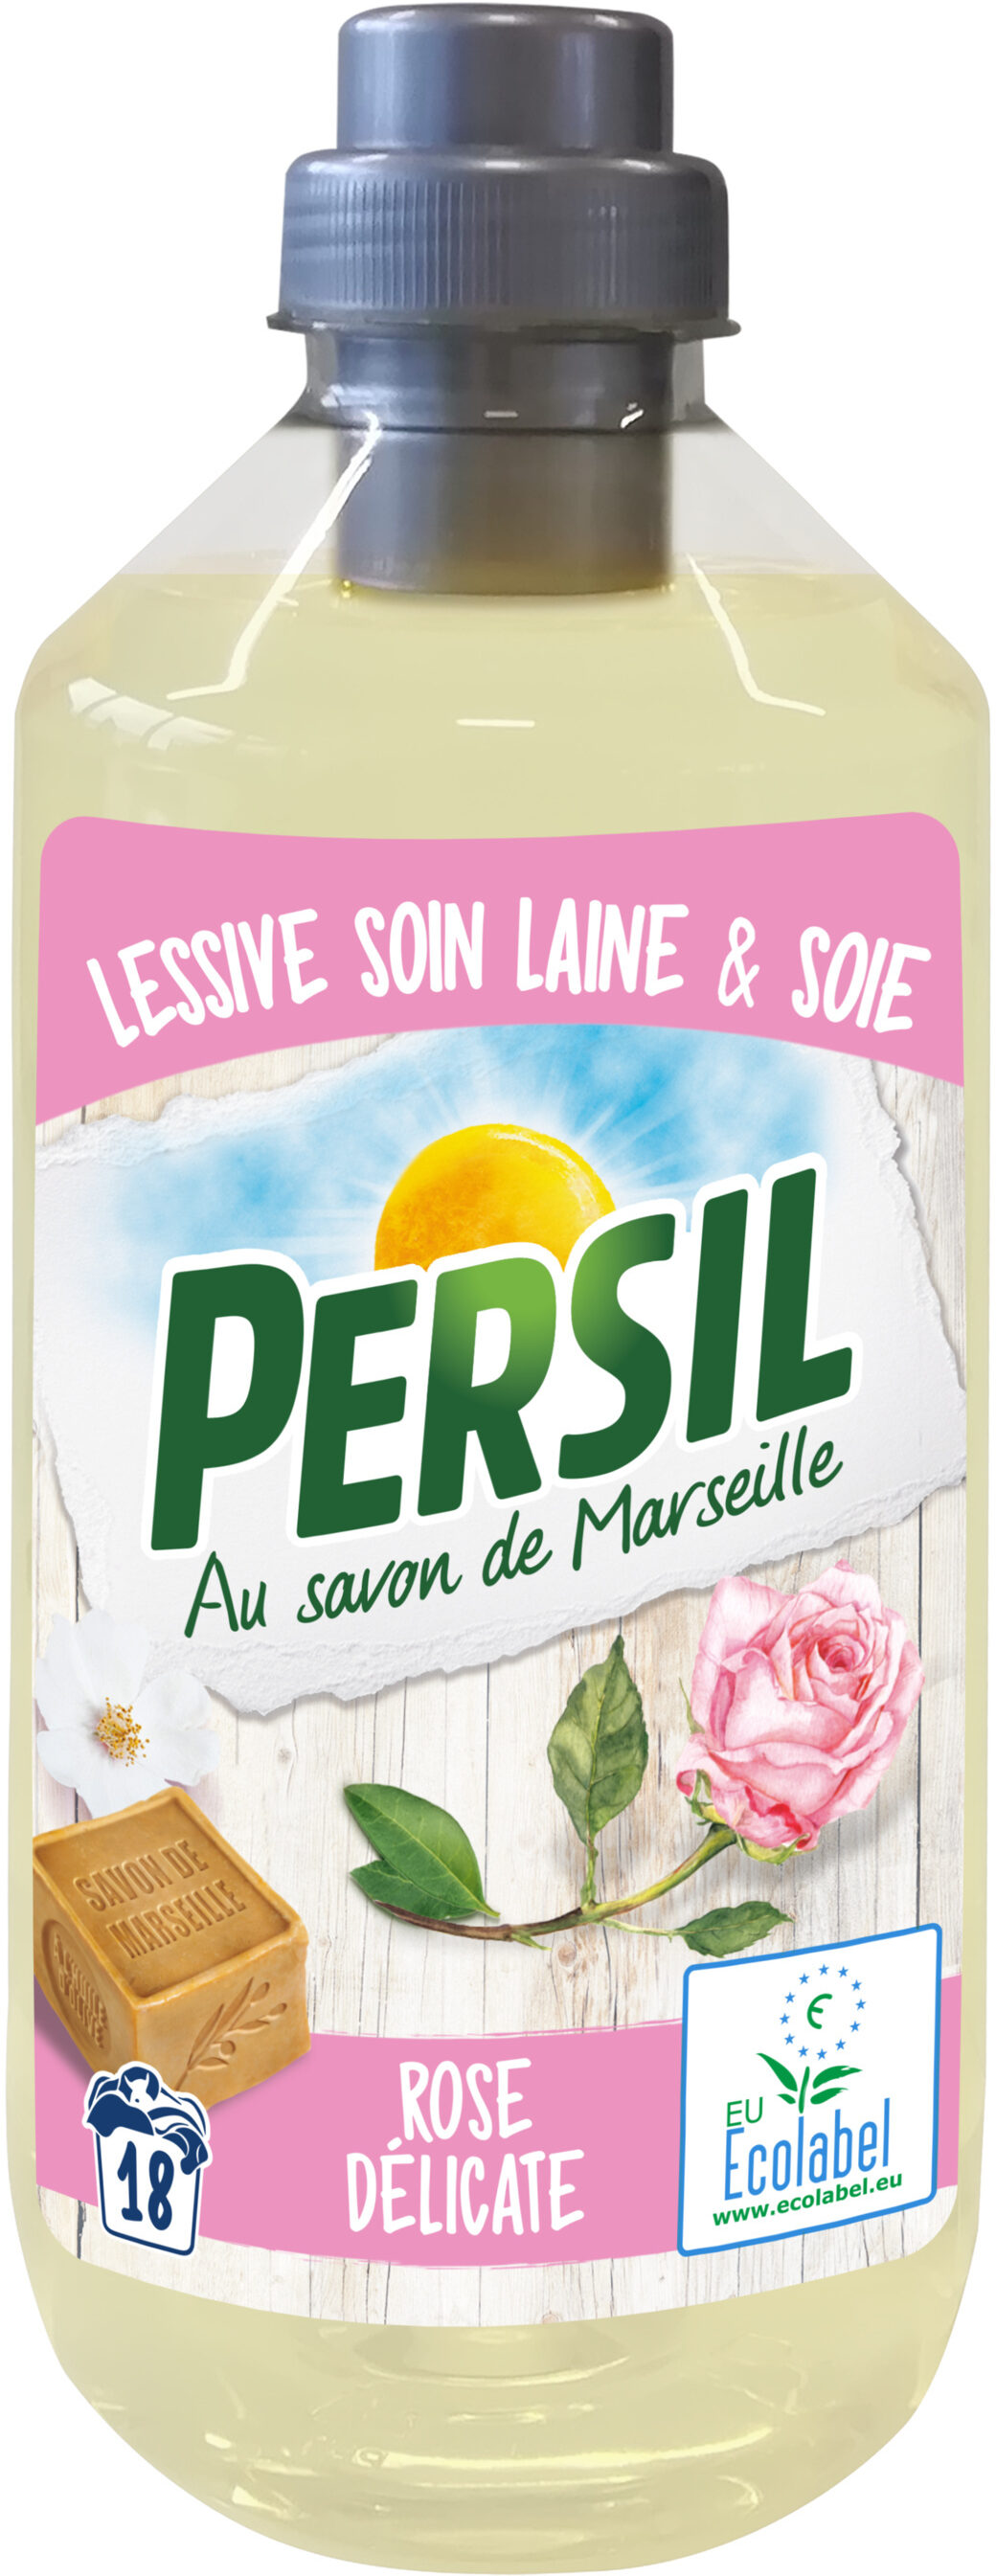 Persil Lessive Liquide Ecolabel Soin Laine & Soie Rose Délicate 990ml 18 Lavages - Product - fr